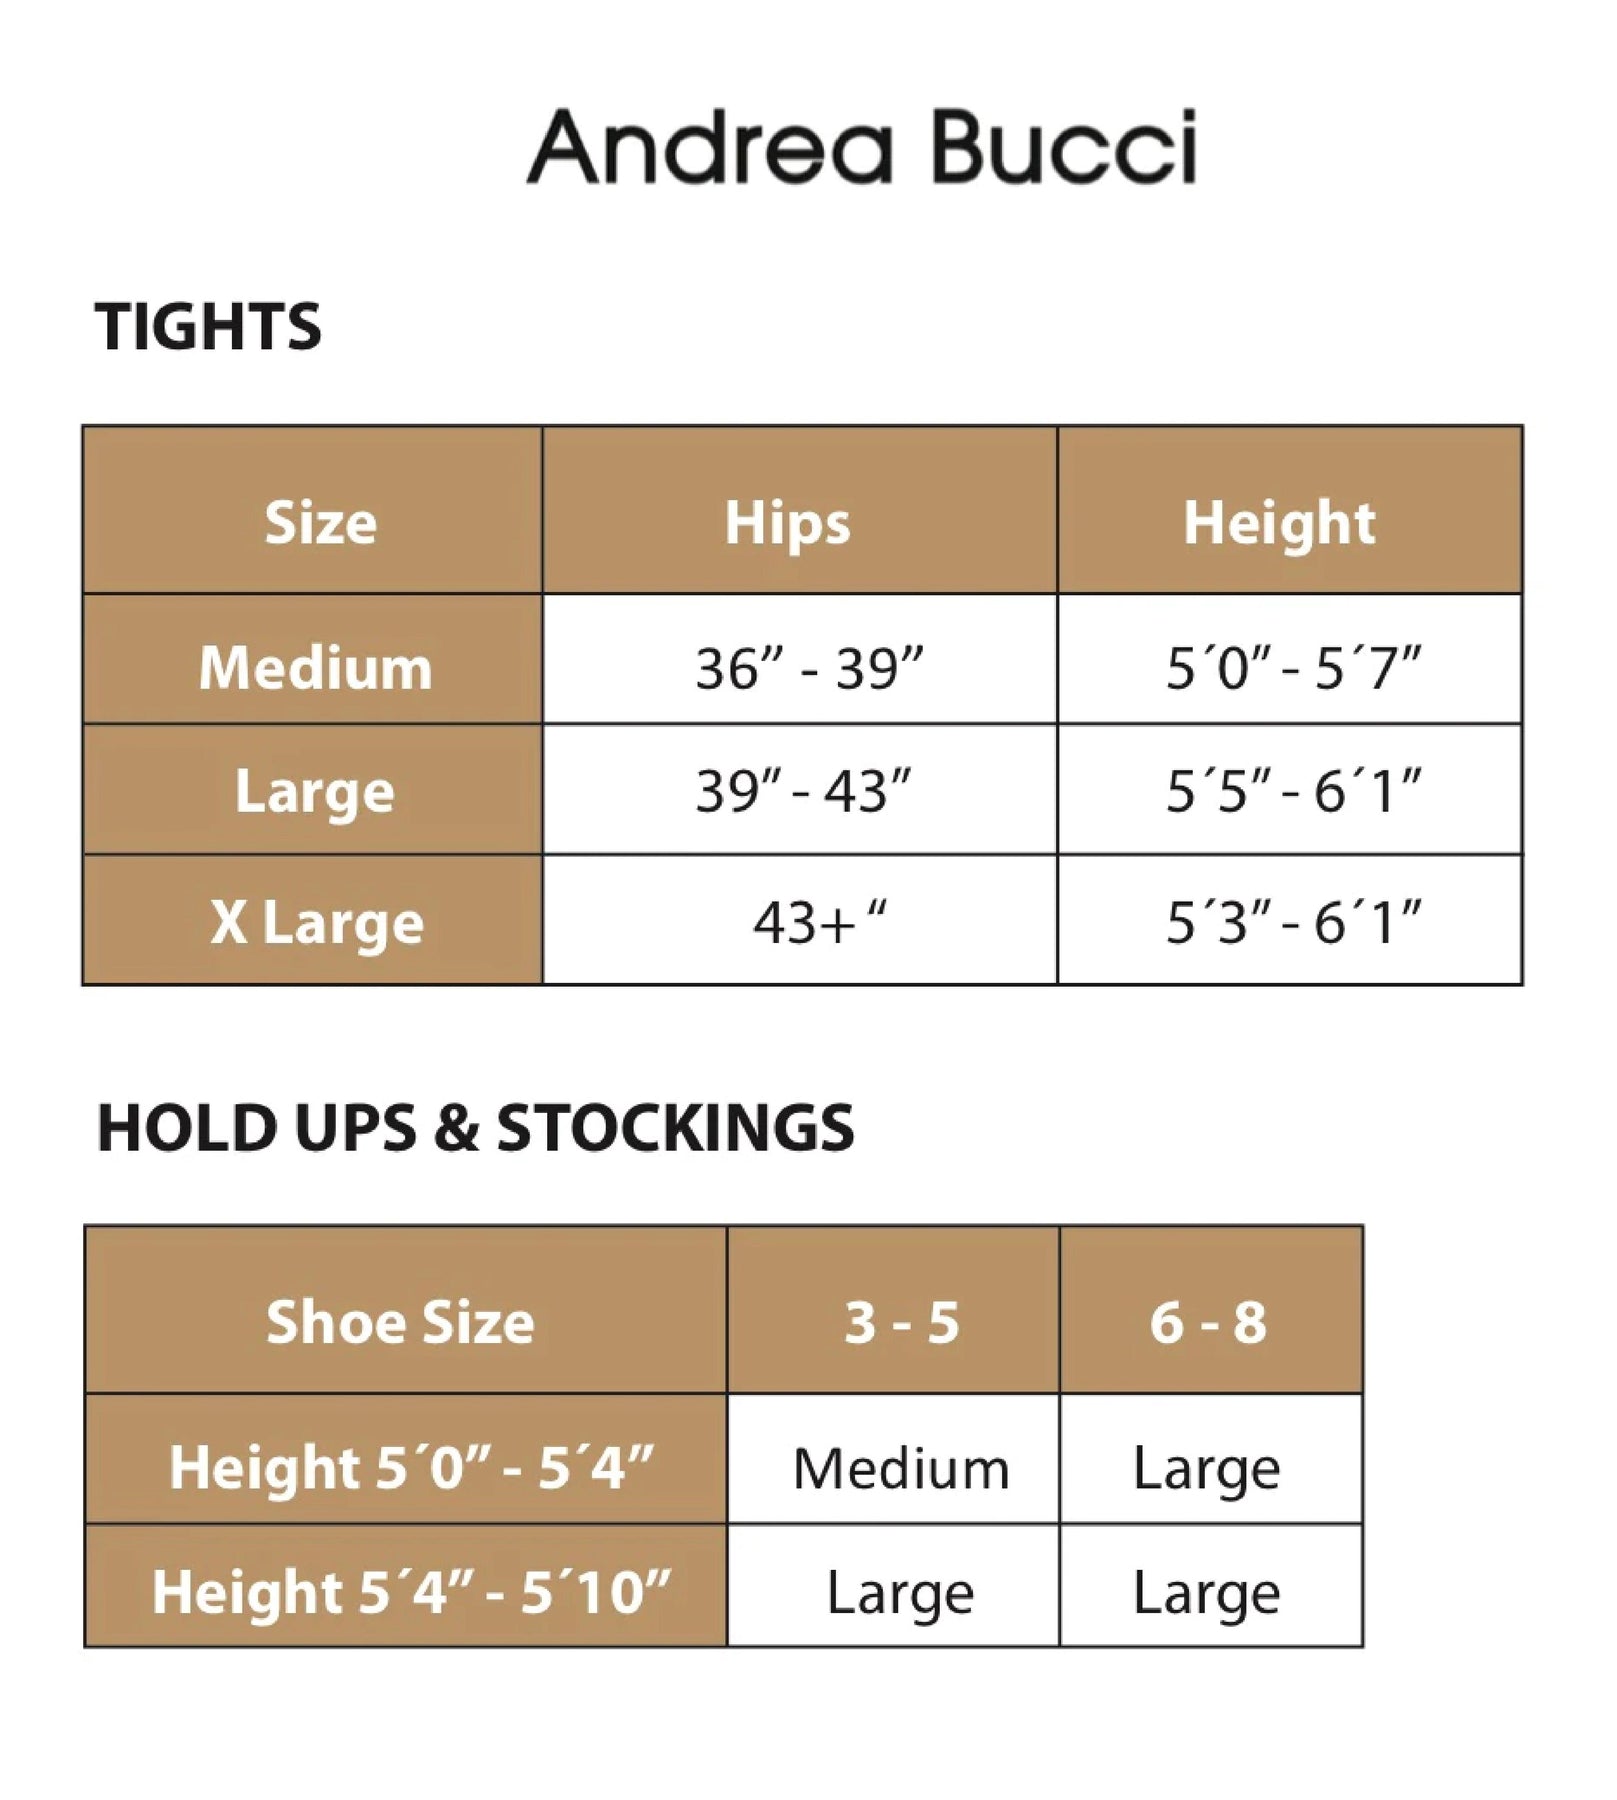 Andrea Bucci Thermal 200 Denier Opaque Tights 03112